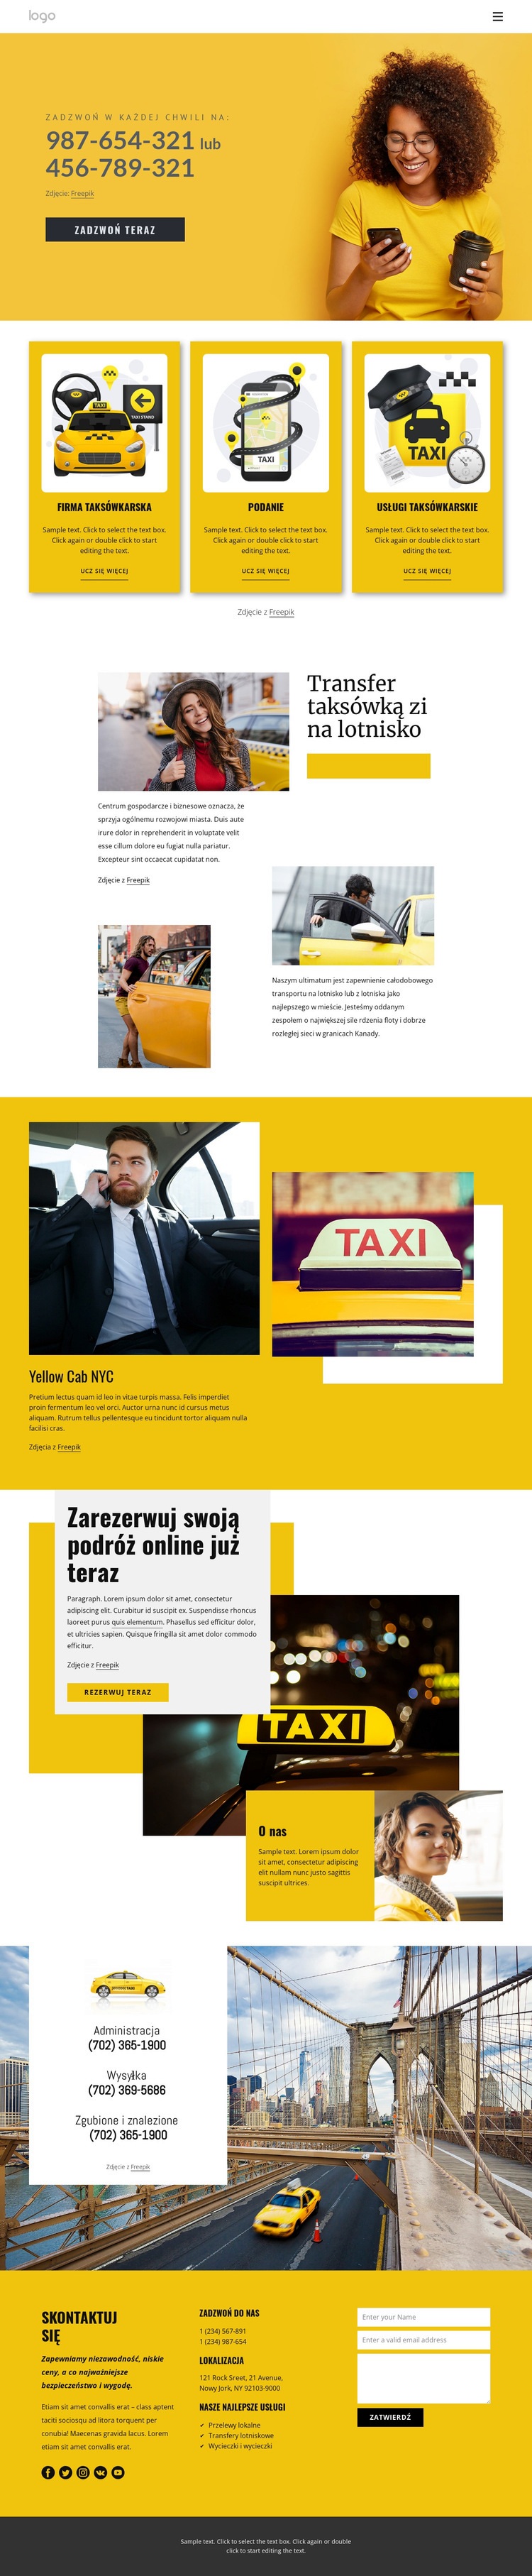 Jakość usług taksówkowych Szablon HTML5